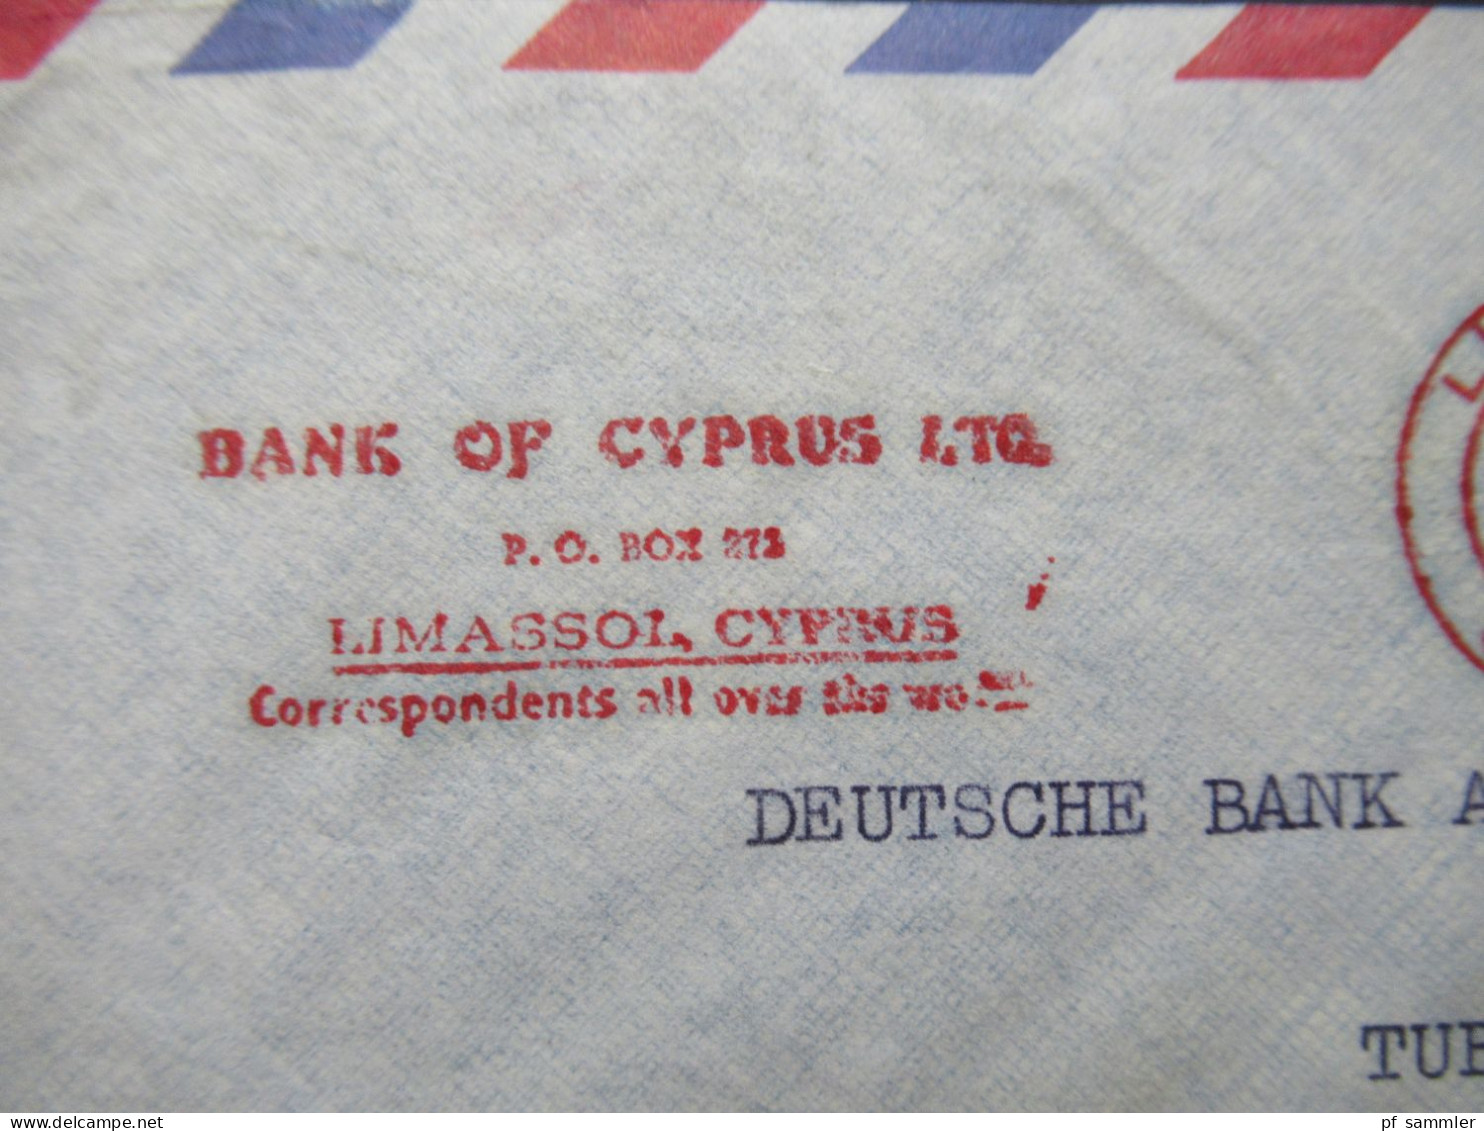 Zypern 1961 Par Avion Auslandsbrief Nach Tübingen Mit Freistempel AFS Limasol Cyprus Bank Of Cyprus LTD - Lettres & Documents